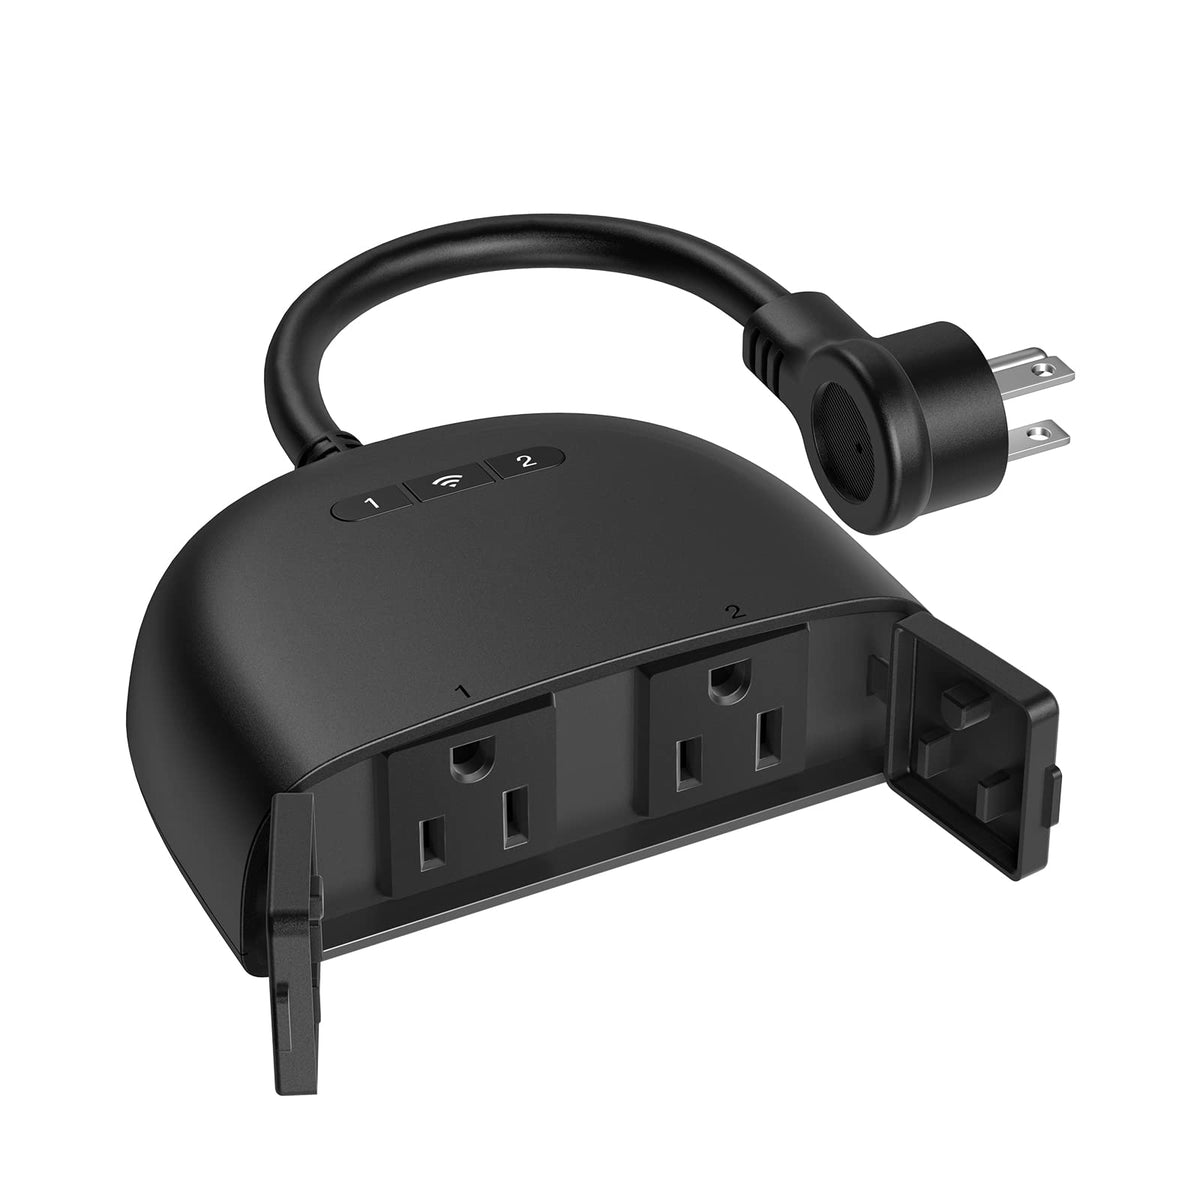 Kasa TP-Link, Kasa Smart Home, 2-Outlet Smart Outdoor Plug, Black